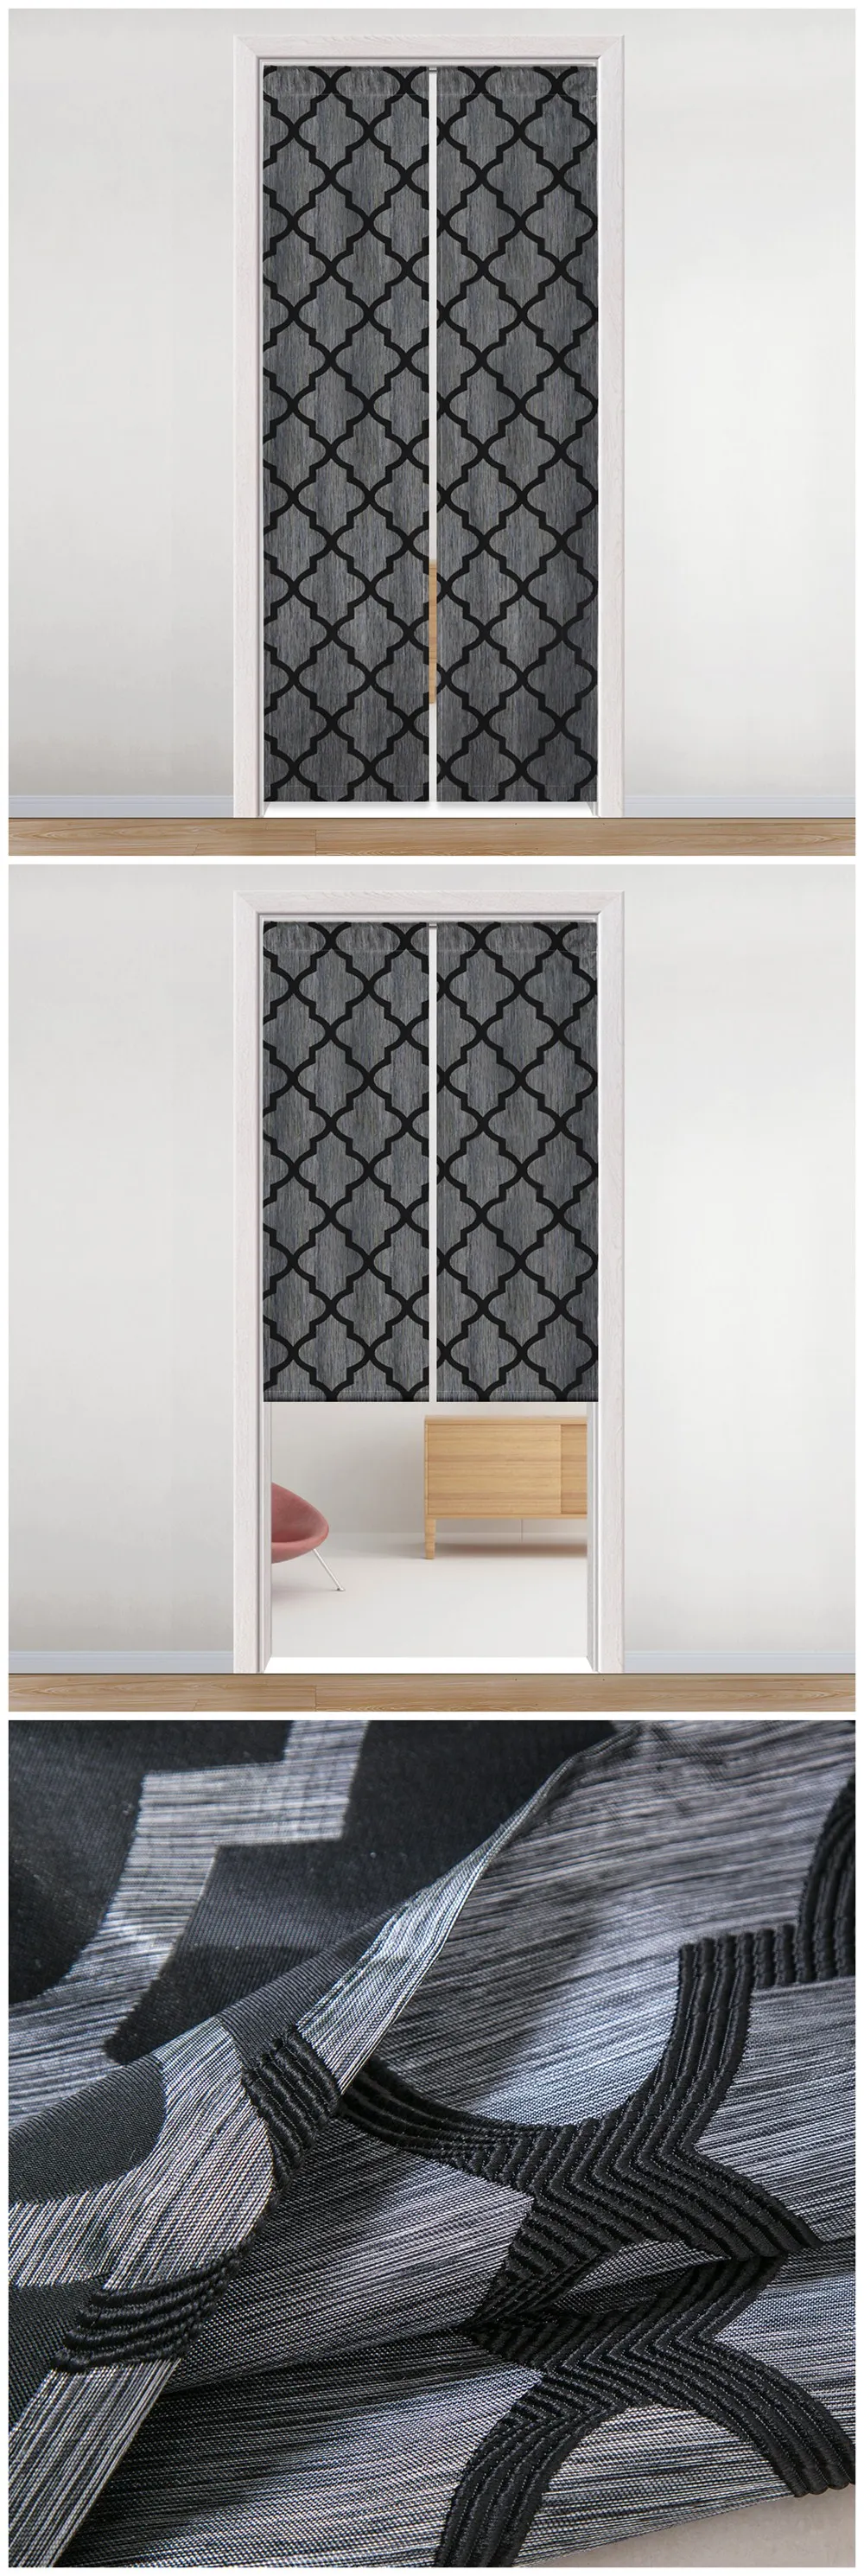 LOZUJOJU простая клетка, жаккард шторы для двери для спальни стержень Карманный обработки полу тени капли нить ткань современный дизайн